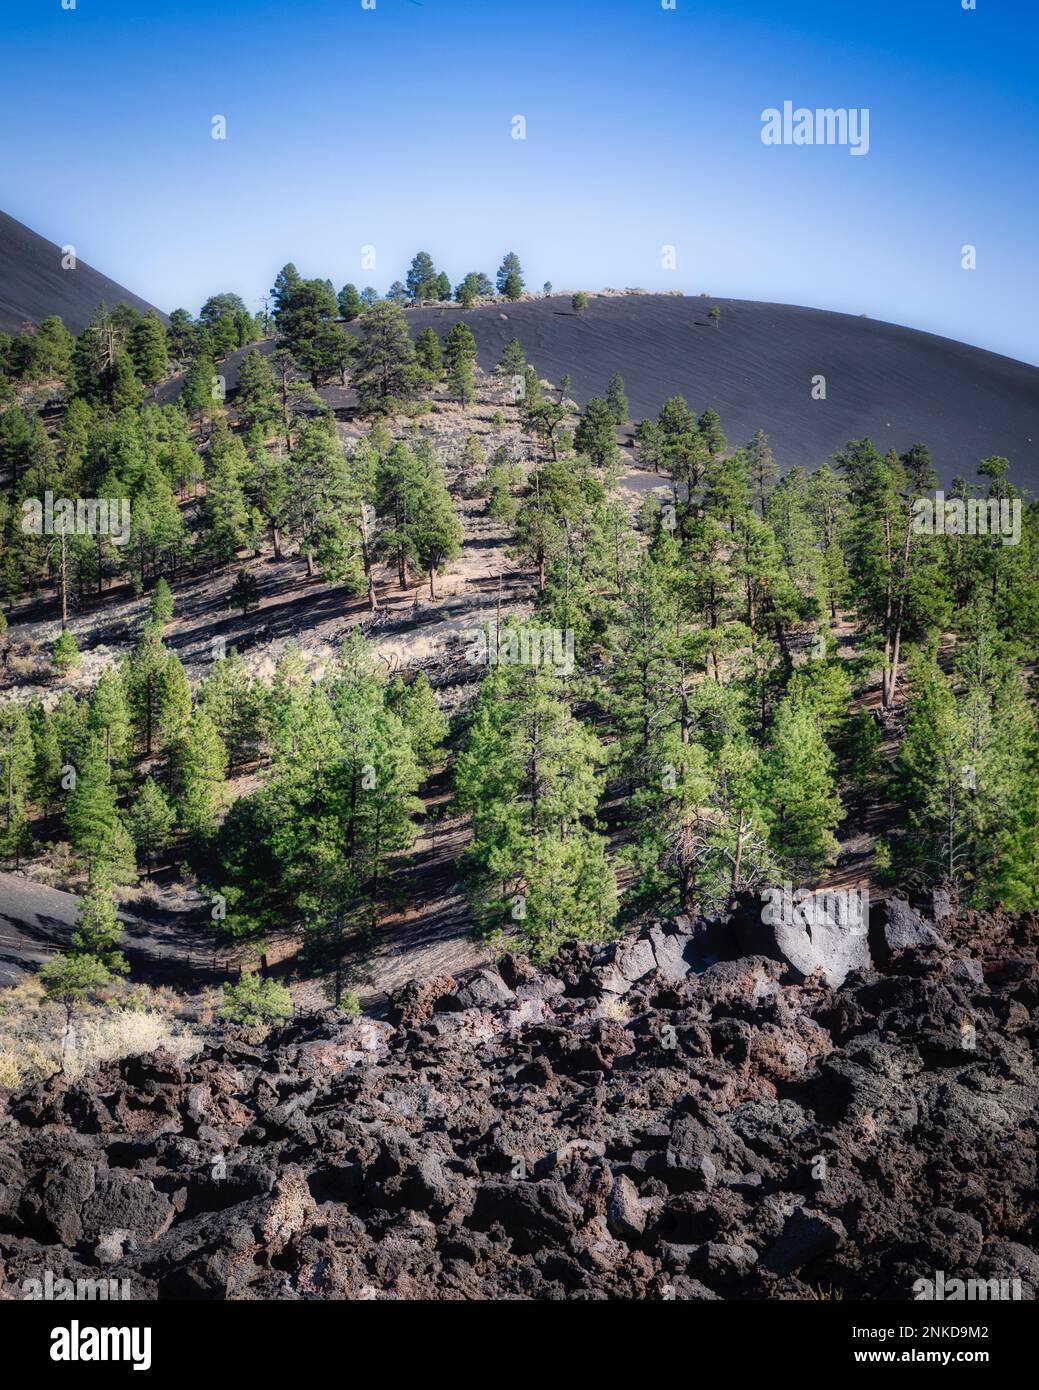 Los restos volcánicos se dispersan por el cráter Sunset cerca de Flagstaff, Arizona. Foto de stock